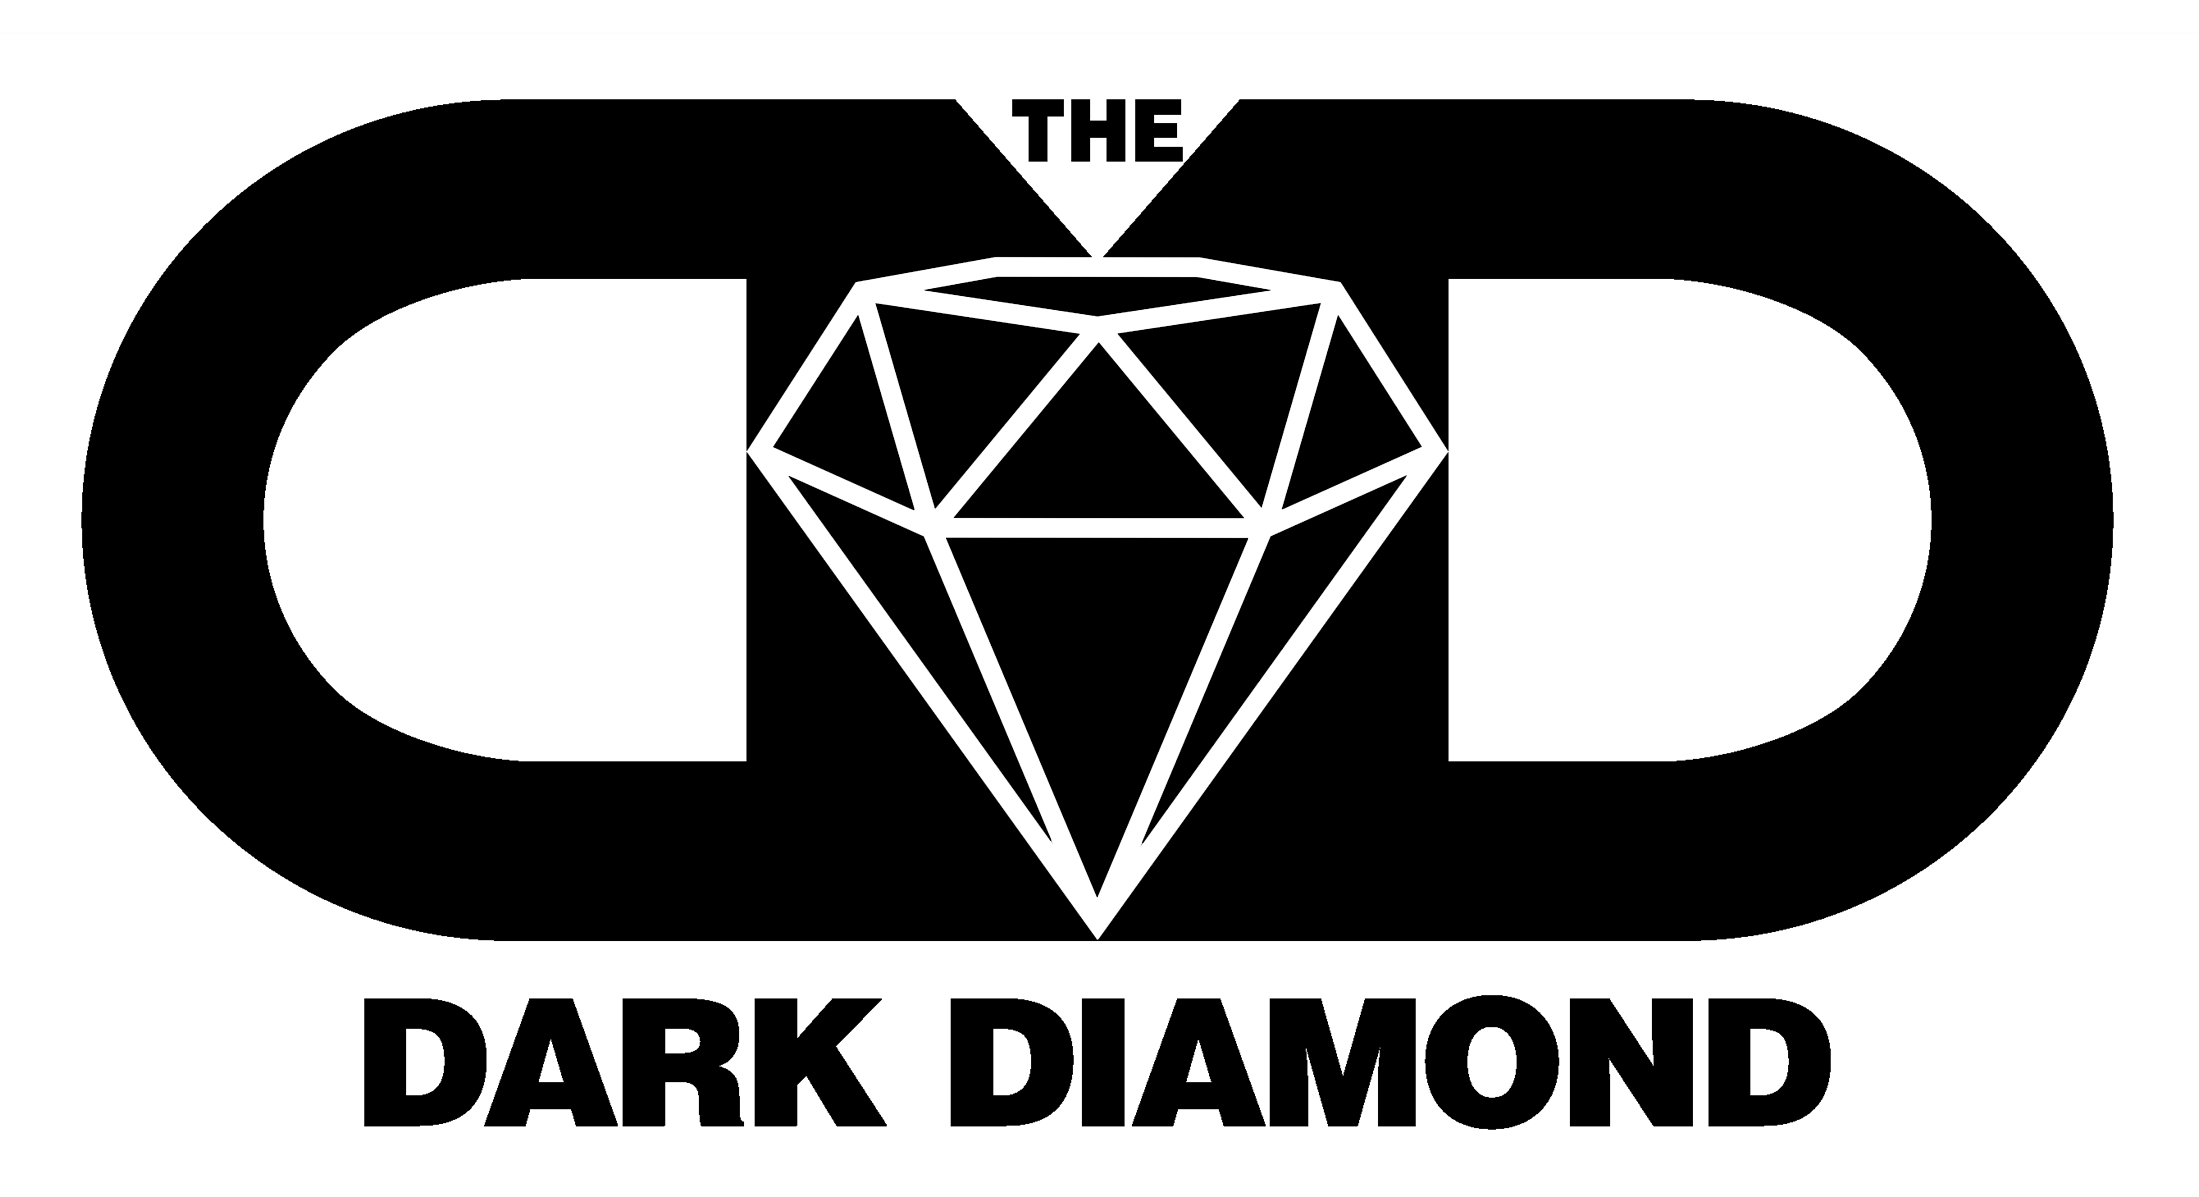 Dark Diamond Logo - The Dark Diamond Smoking Wholesale Shop